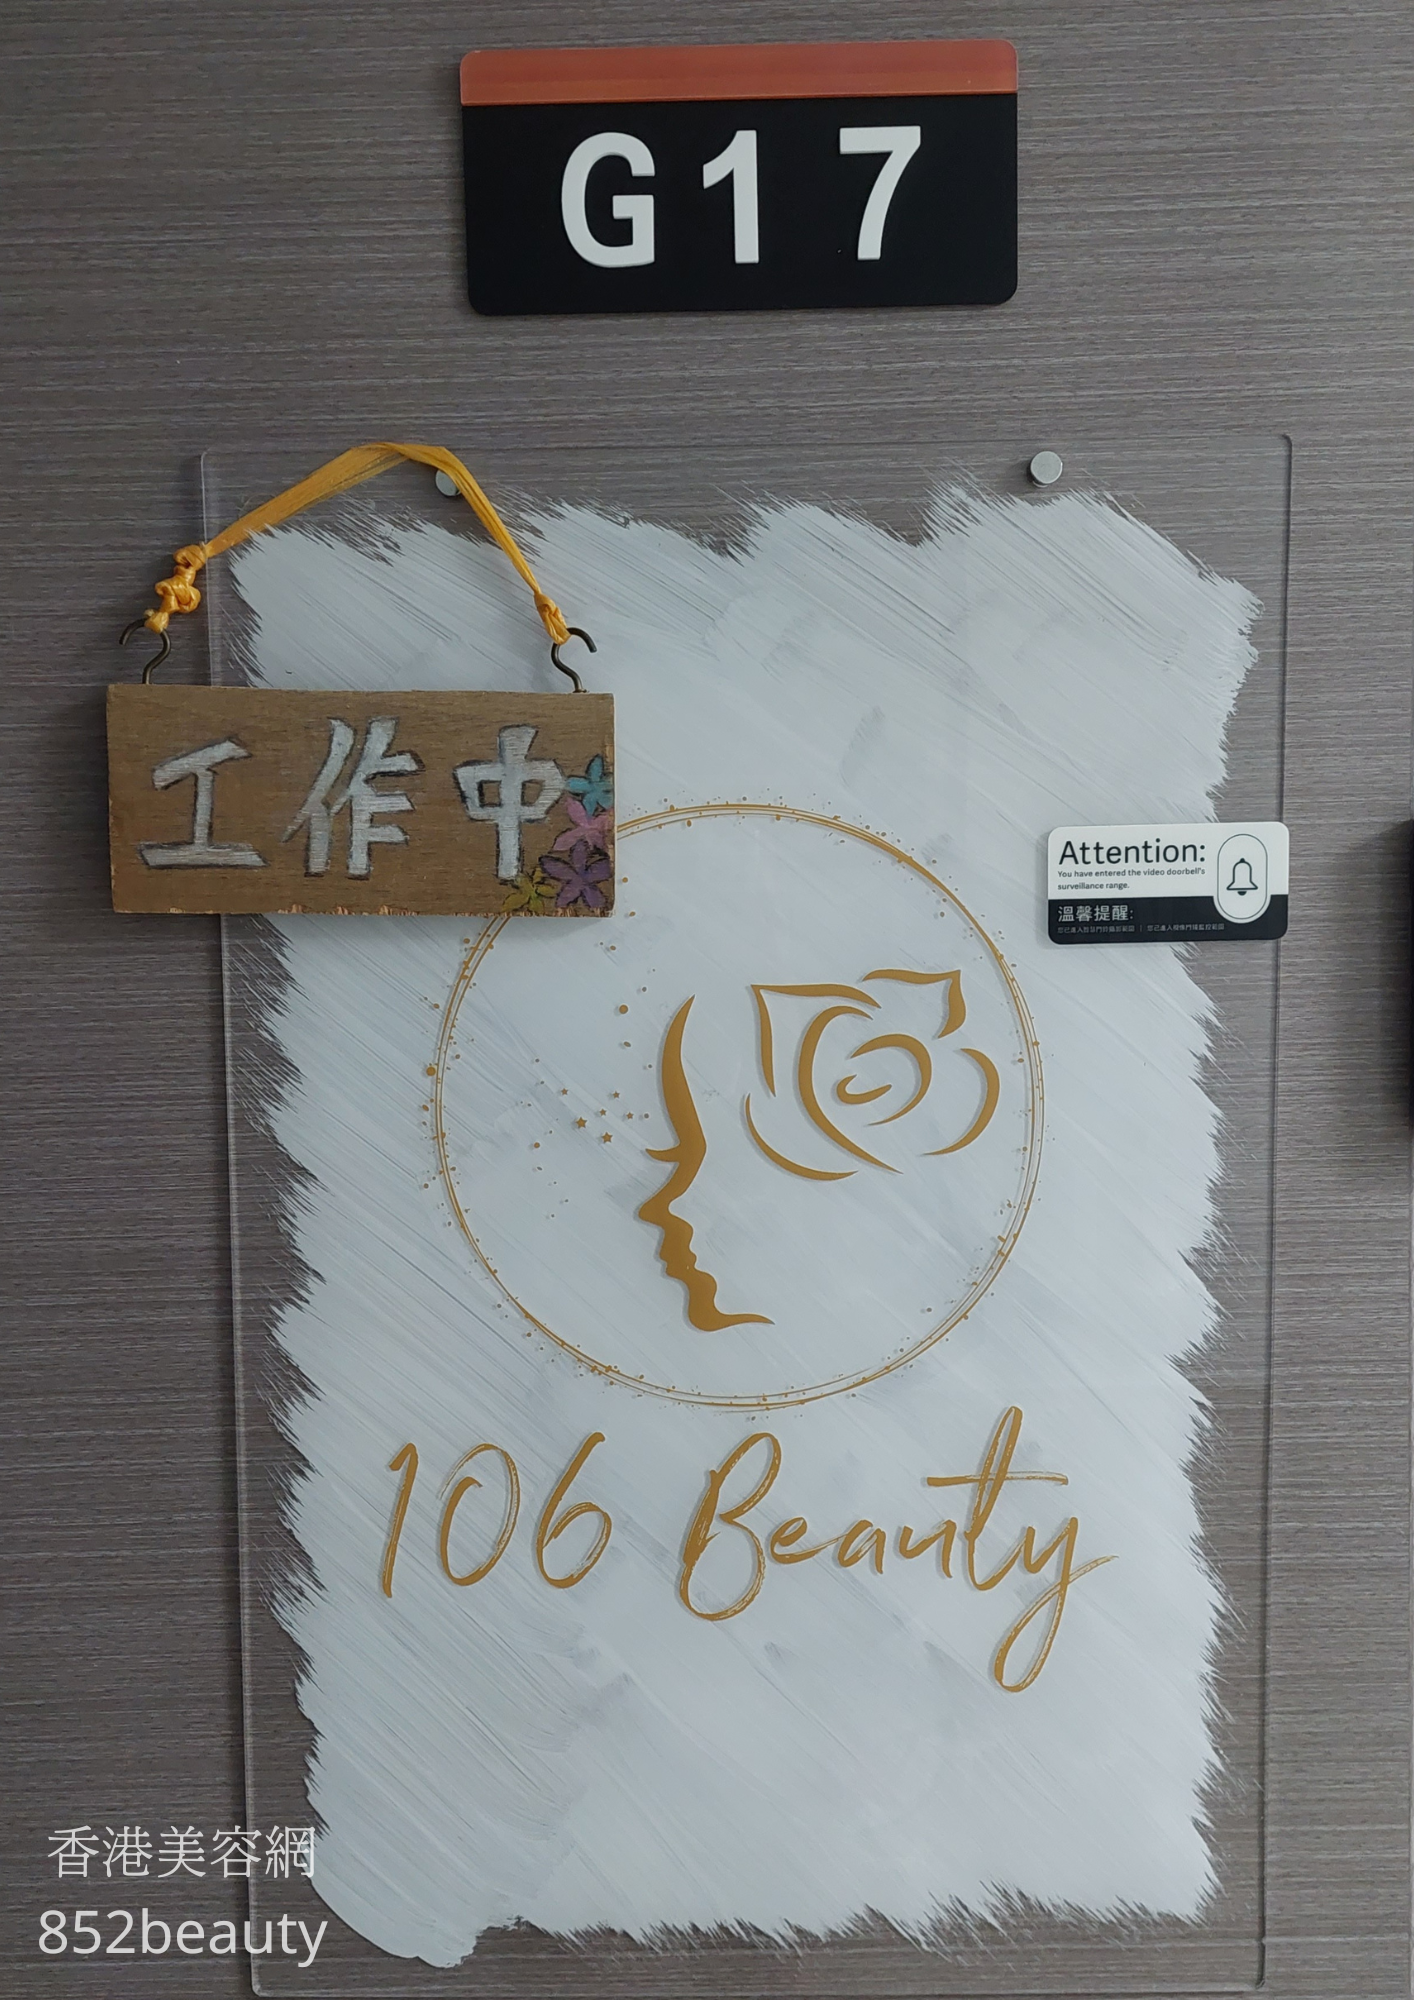 面部護理: 106 Beauty